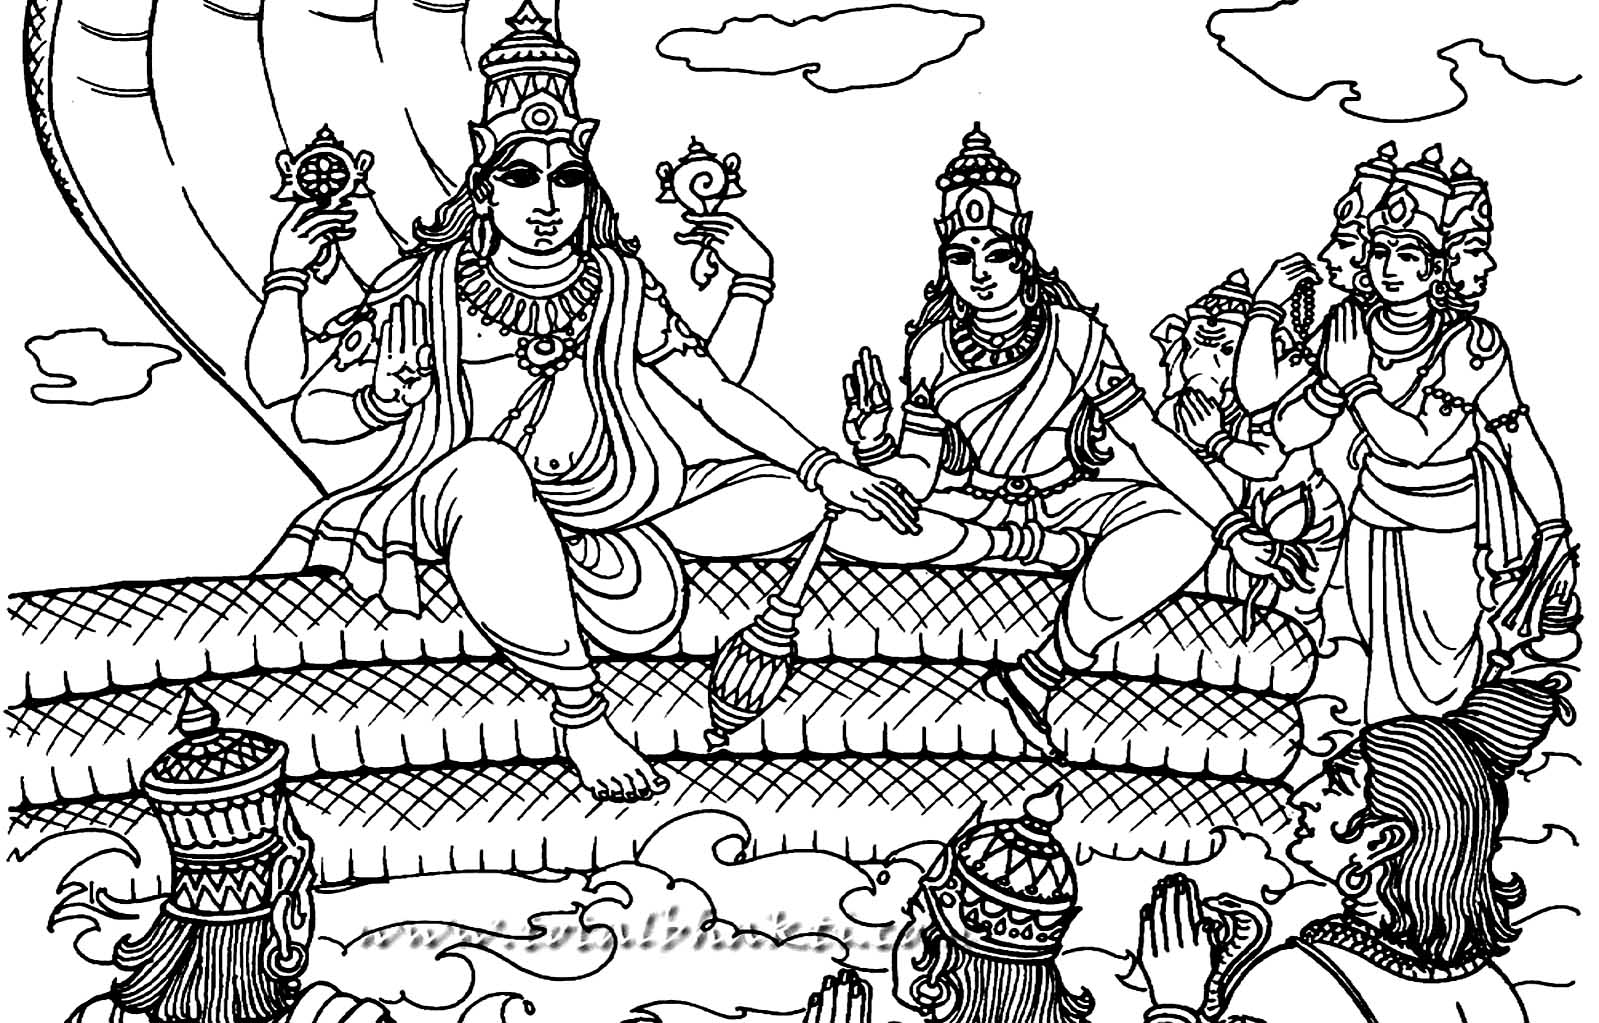 Vishnu ist der 'Erhalter' in der hinduistischen Dreifaltigkeit und das Höchste Wesen in der Tradition des Vaishnavismus